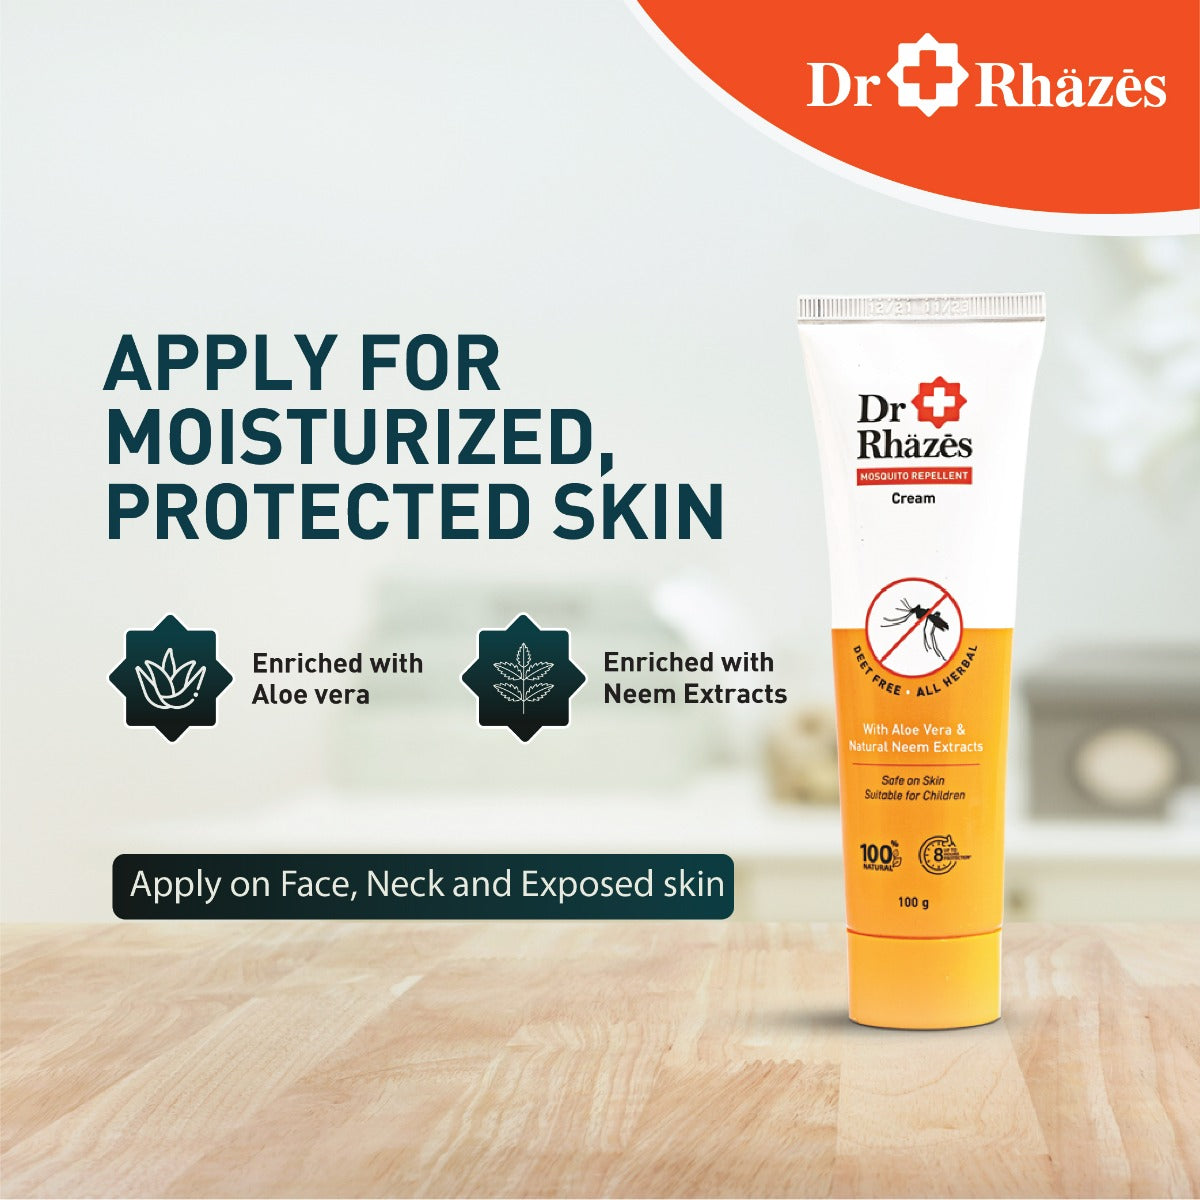 Dr Rhazes Mosquito Repellent Cream